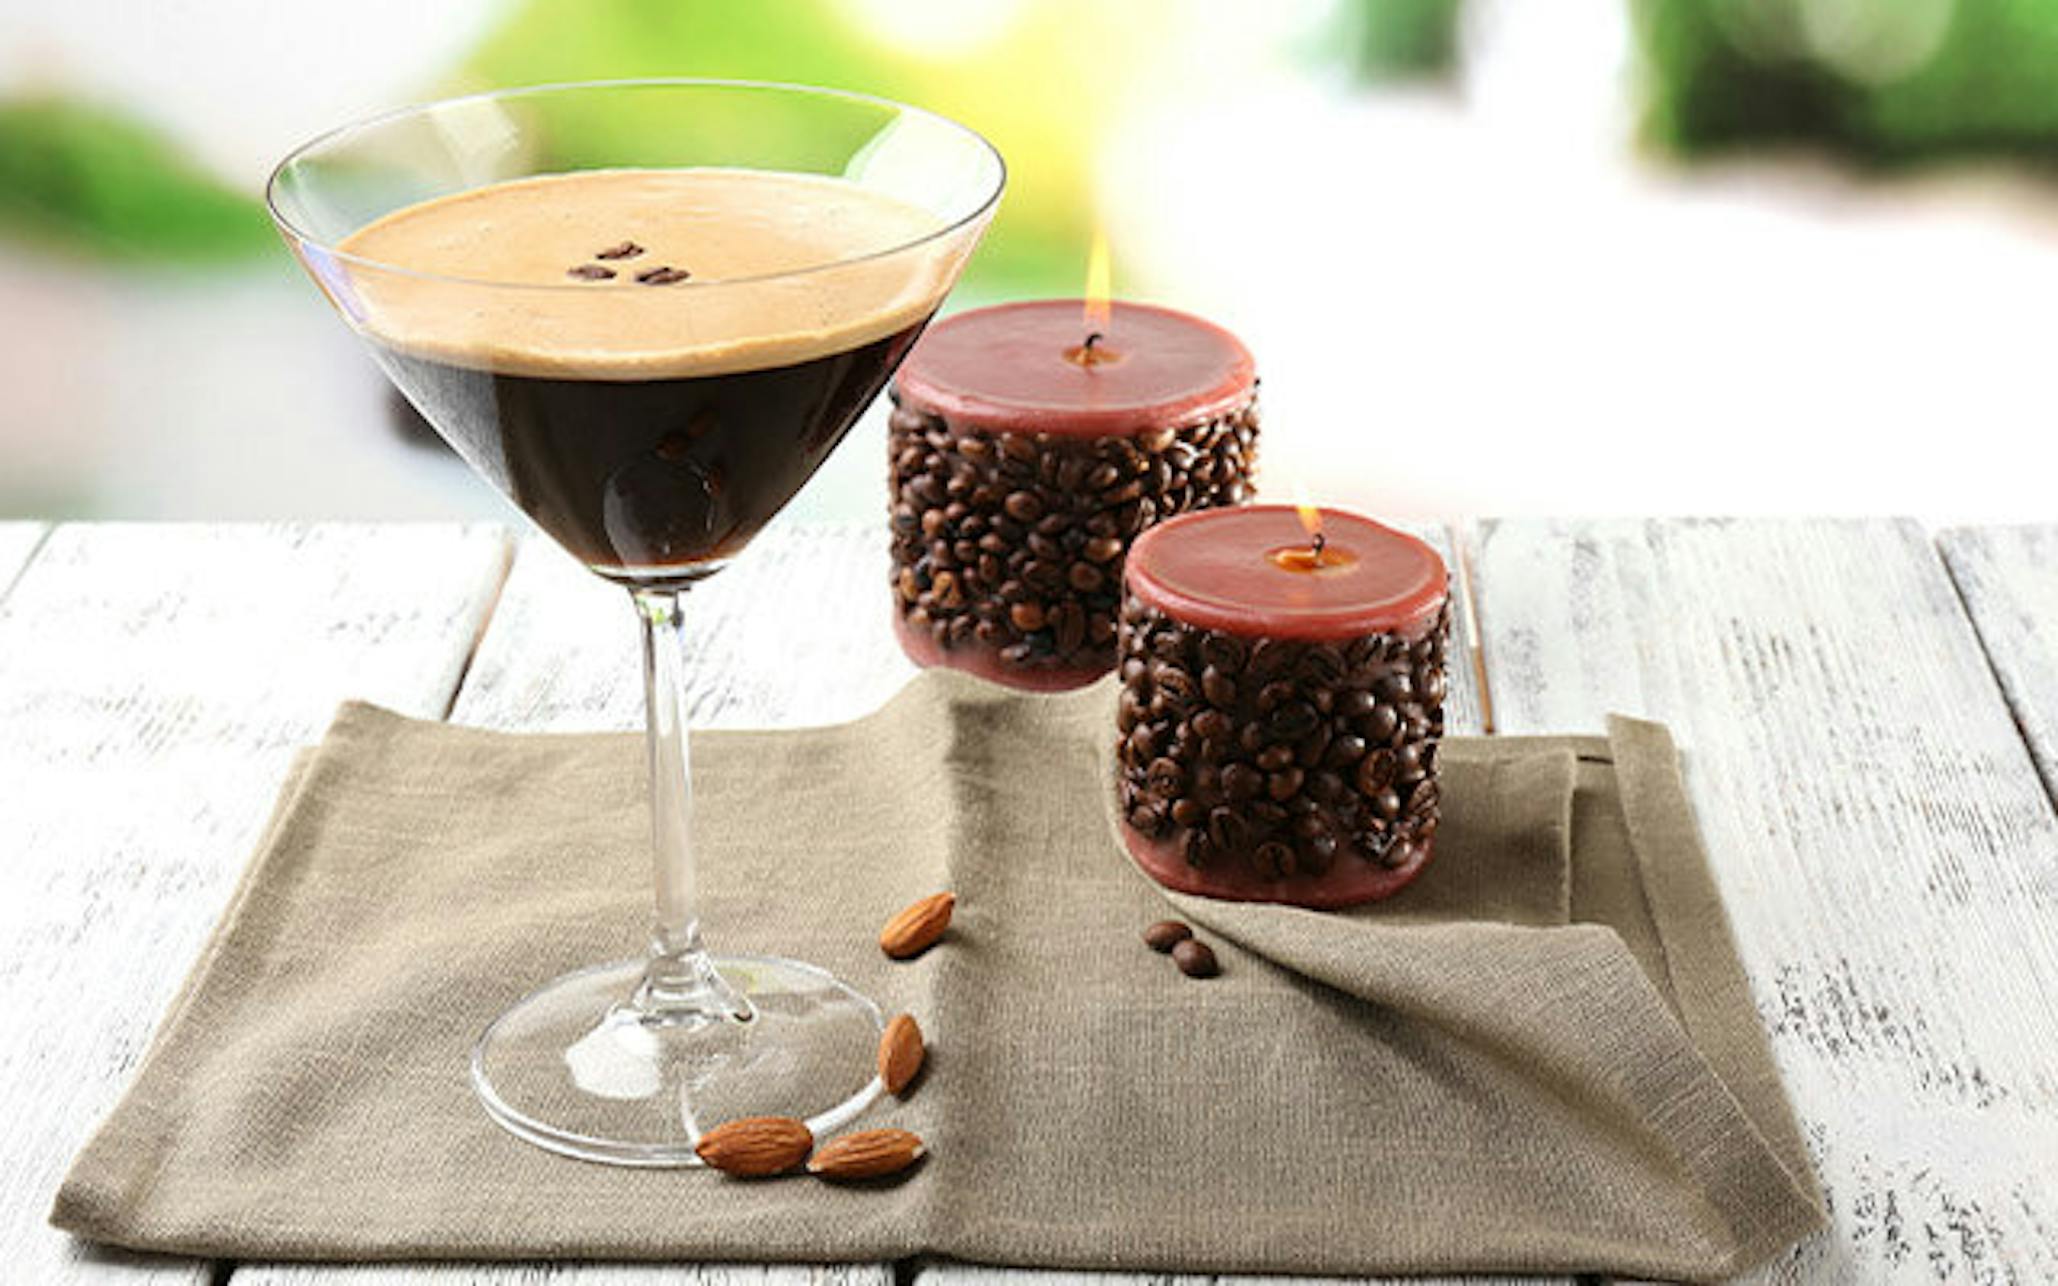 Vanilla Espresso Martini with coffee bean candles